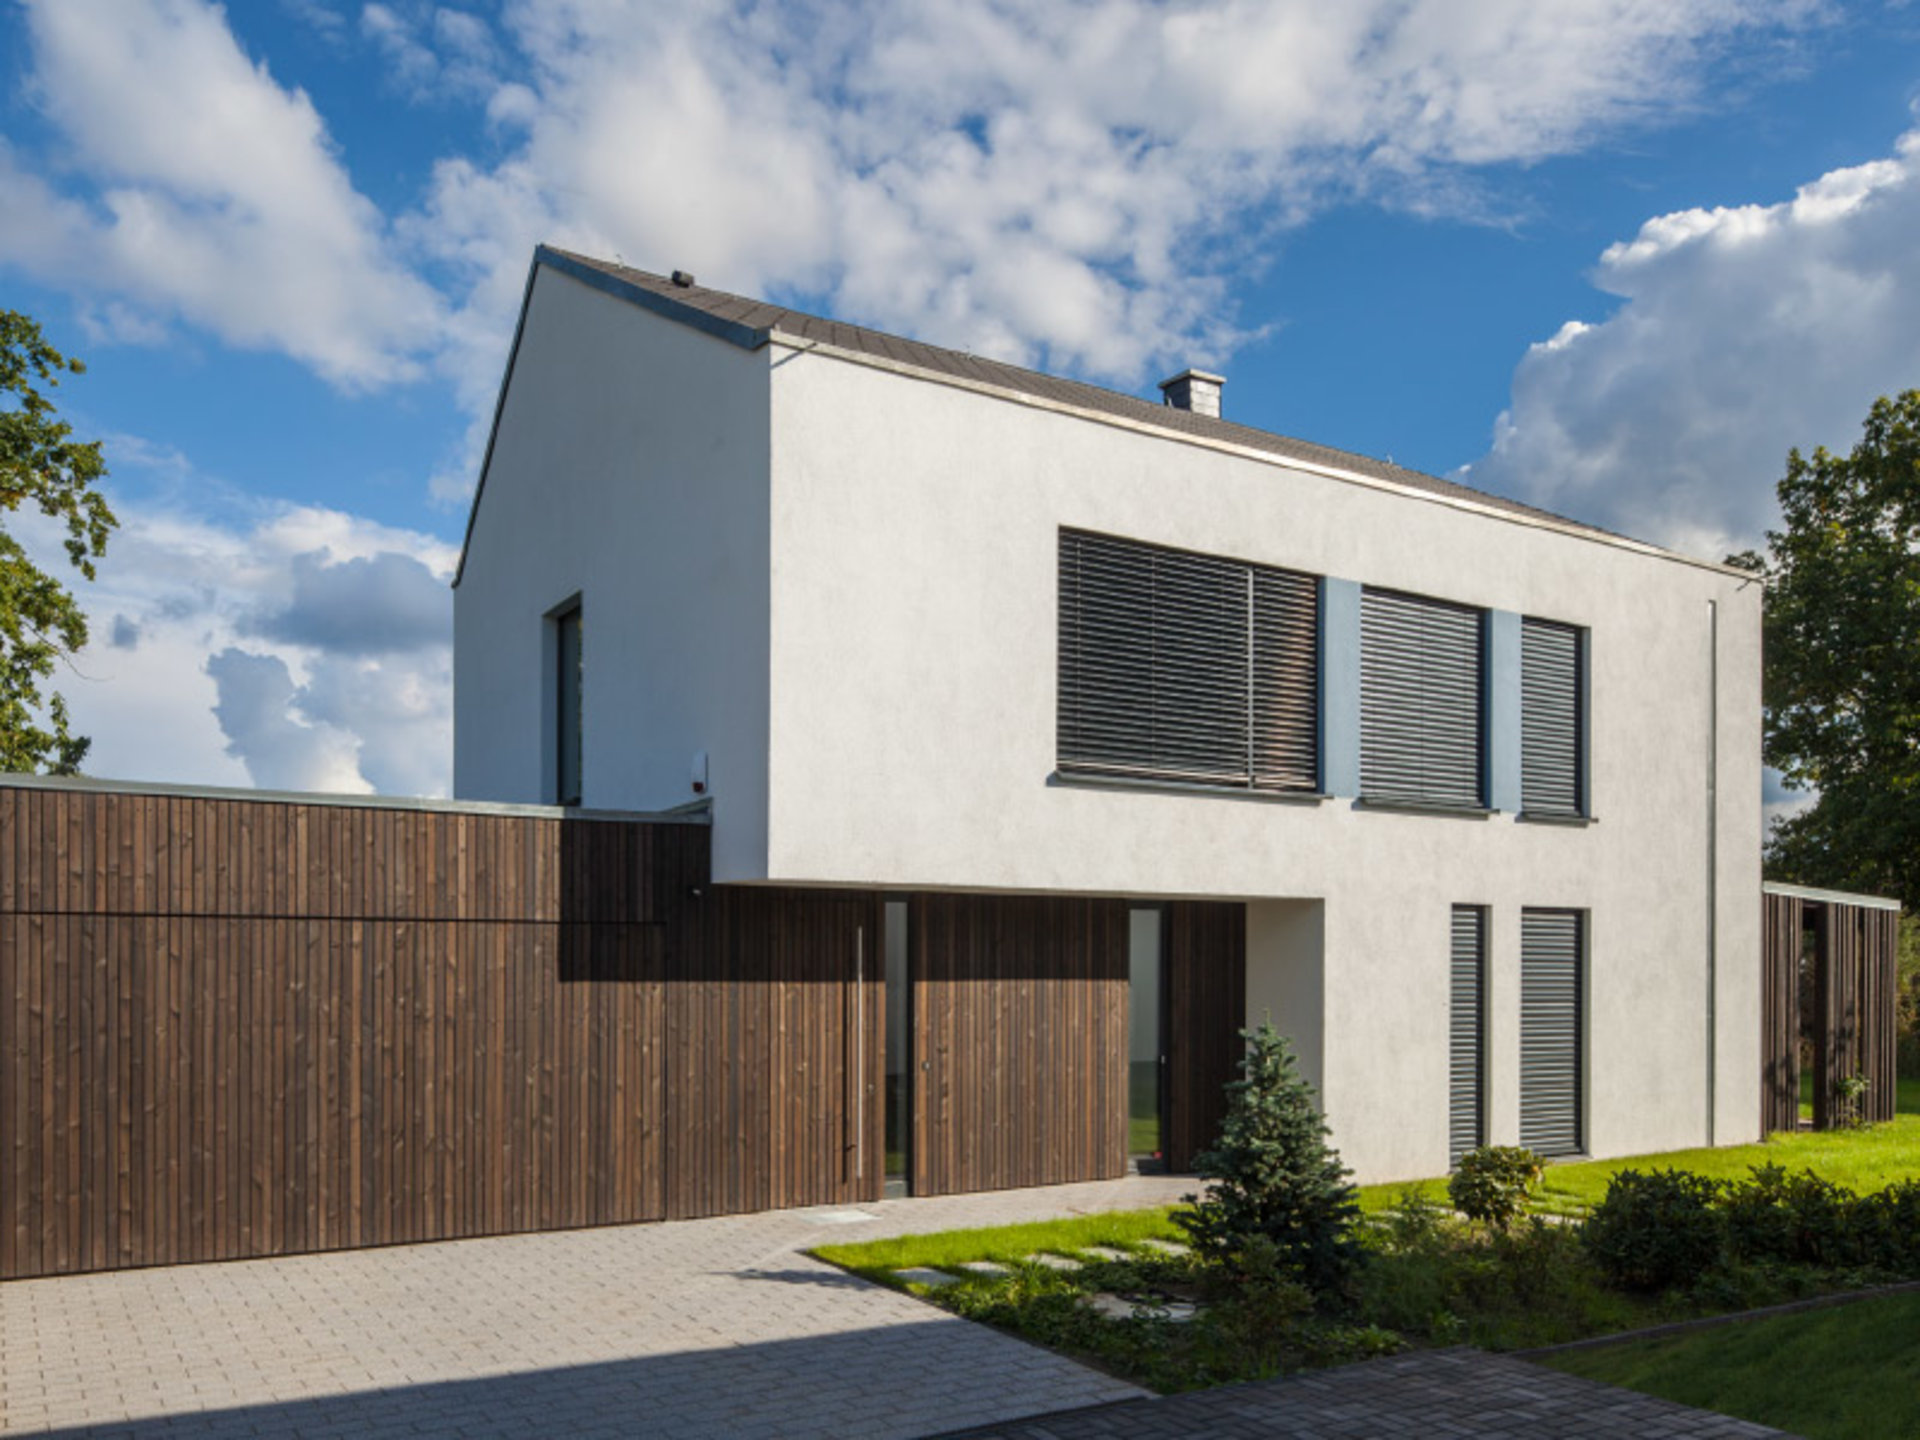 Haus Möller -zeitgemßer Stil durch schlanke Linienführung. Ein Volltreffer. (Foto: BAUMEISTER-HAUS)